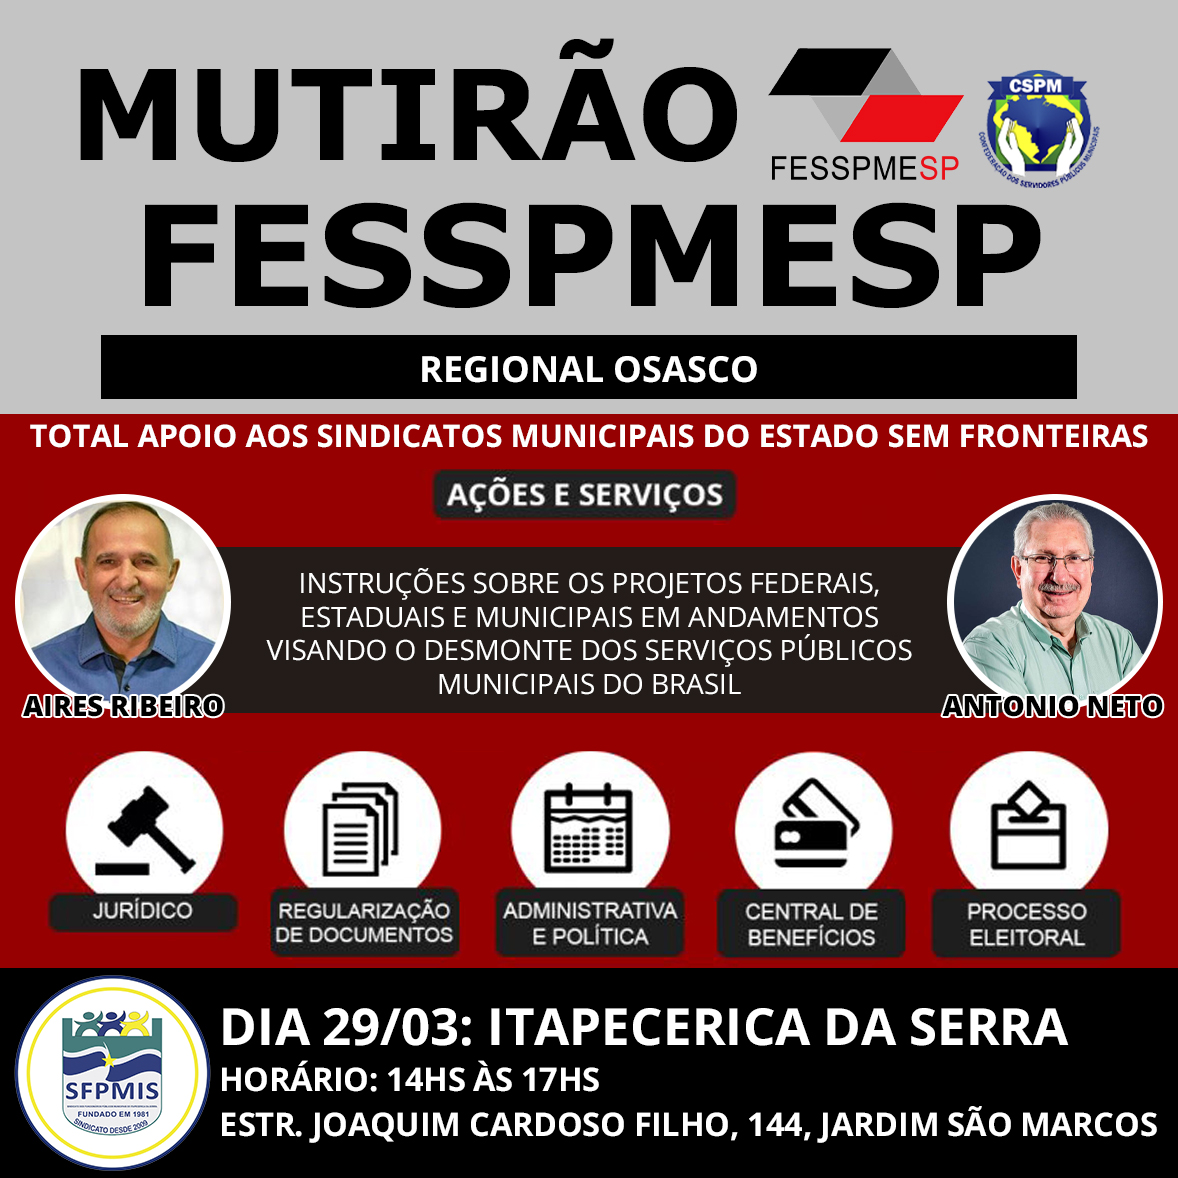 FESSPMESP divulga o próximo Mutirão presencial, dia 29/03 em Itapecerica da Serra